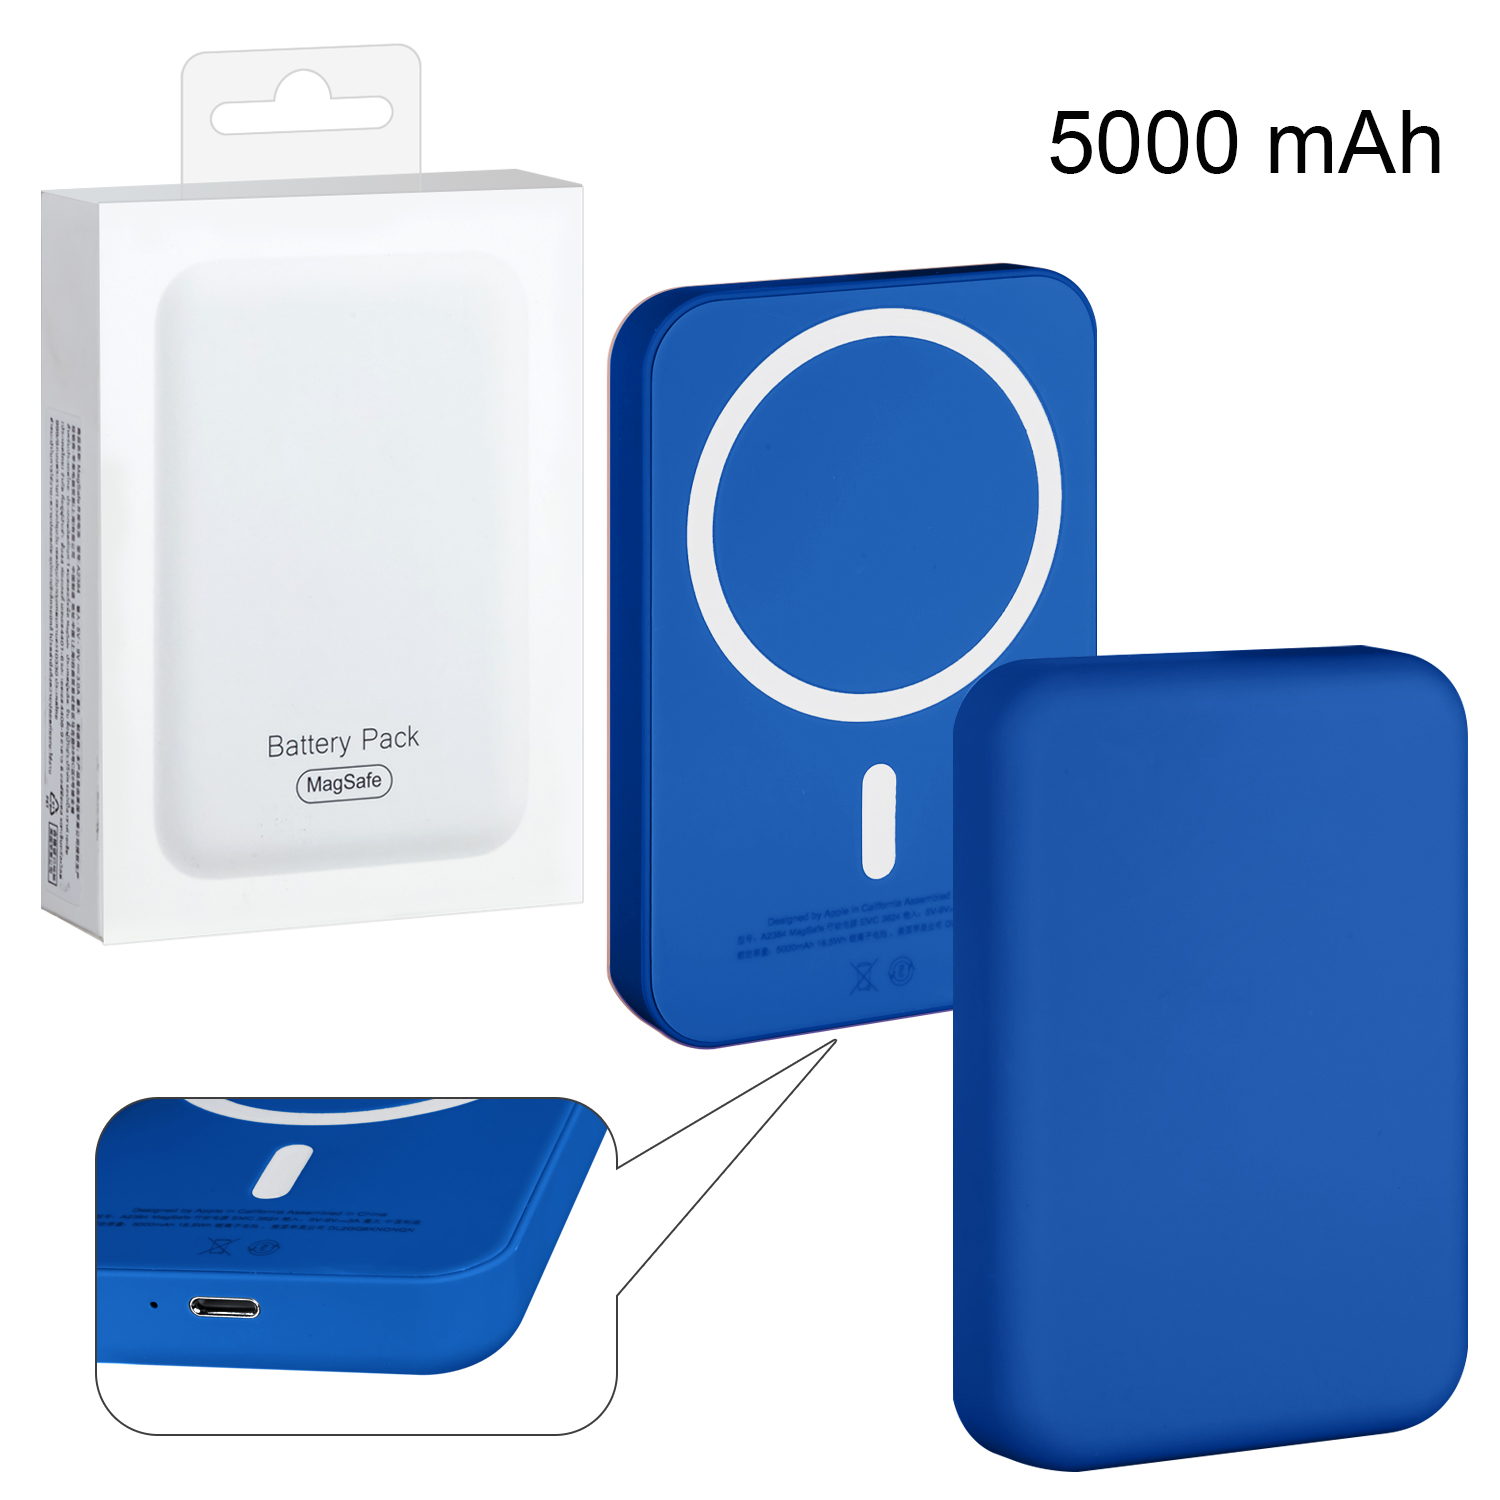 Беспроводное зарядное устройство Magsafe магнитное 5W 5000mAh (no logo) темно-синий